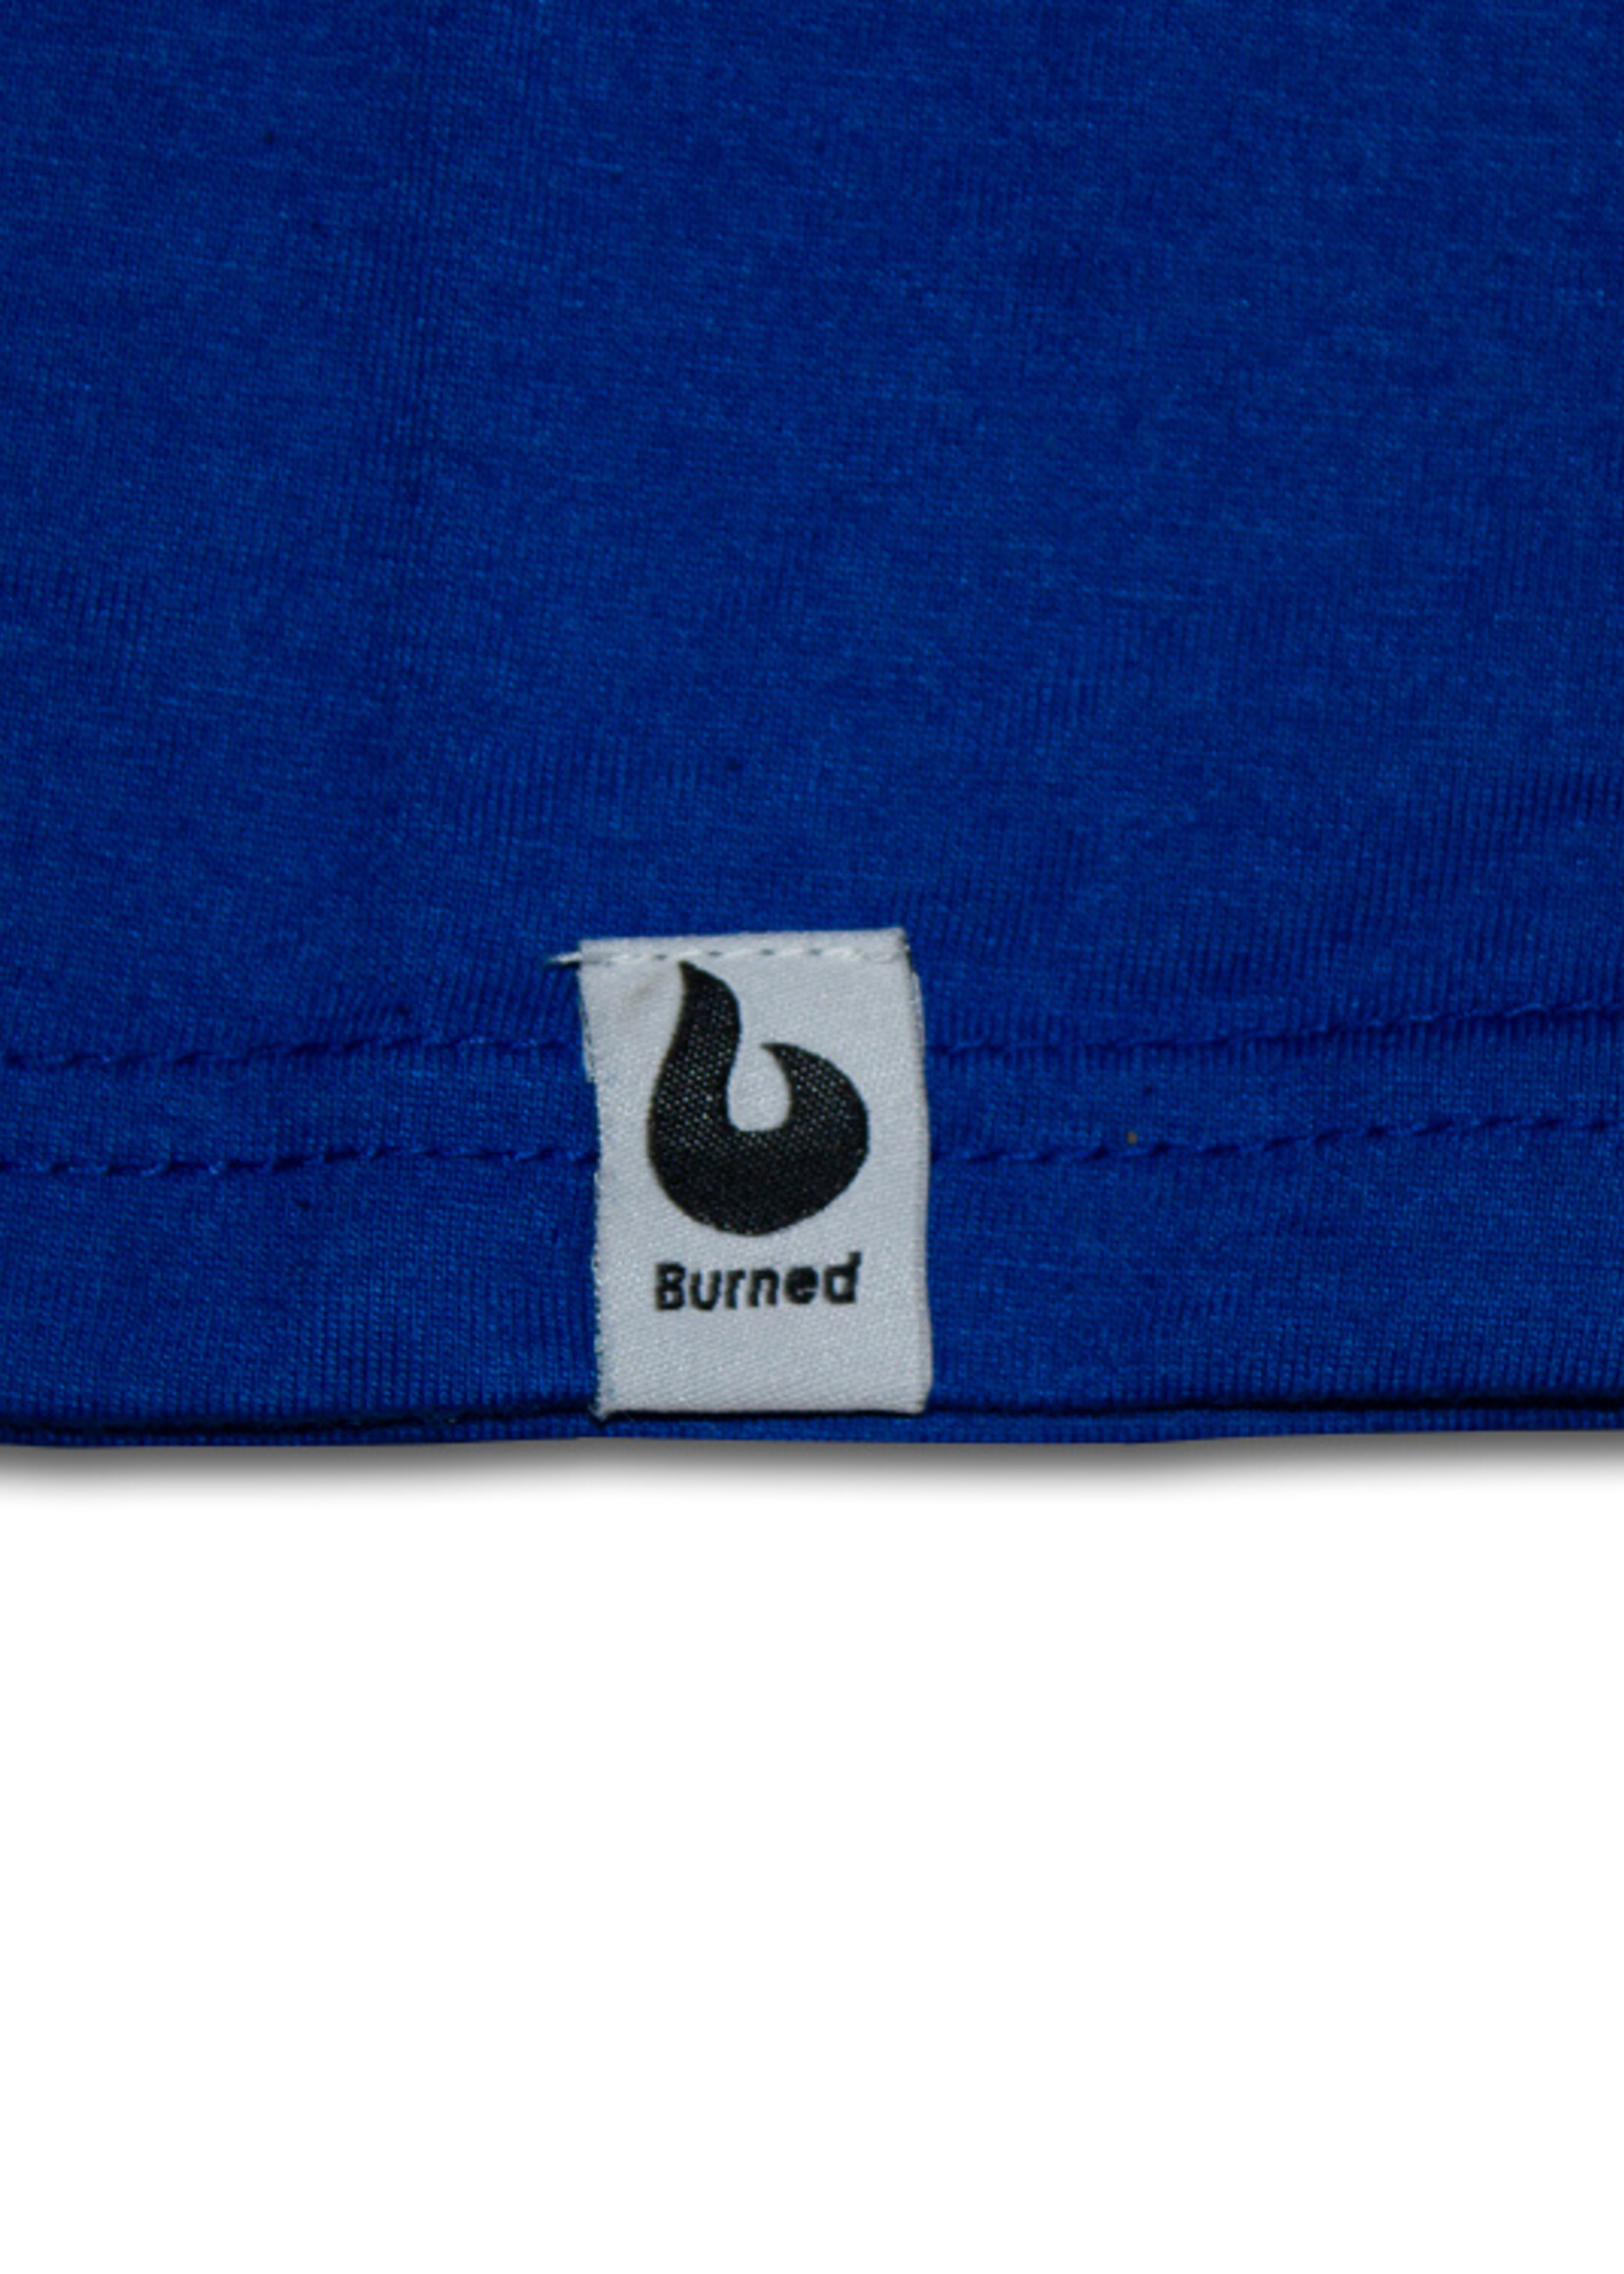 Burned Burned T-shirt Royal Blue